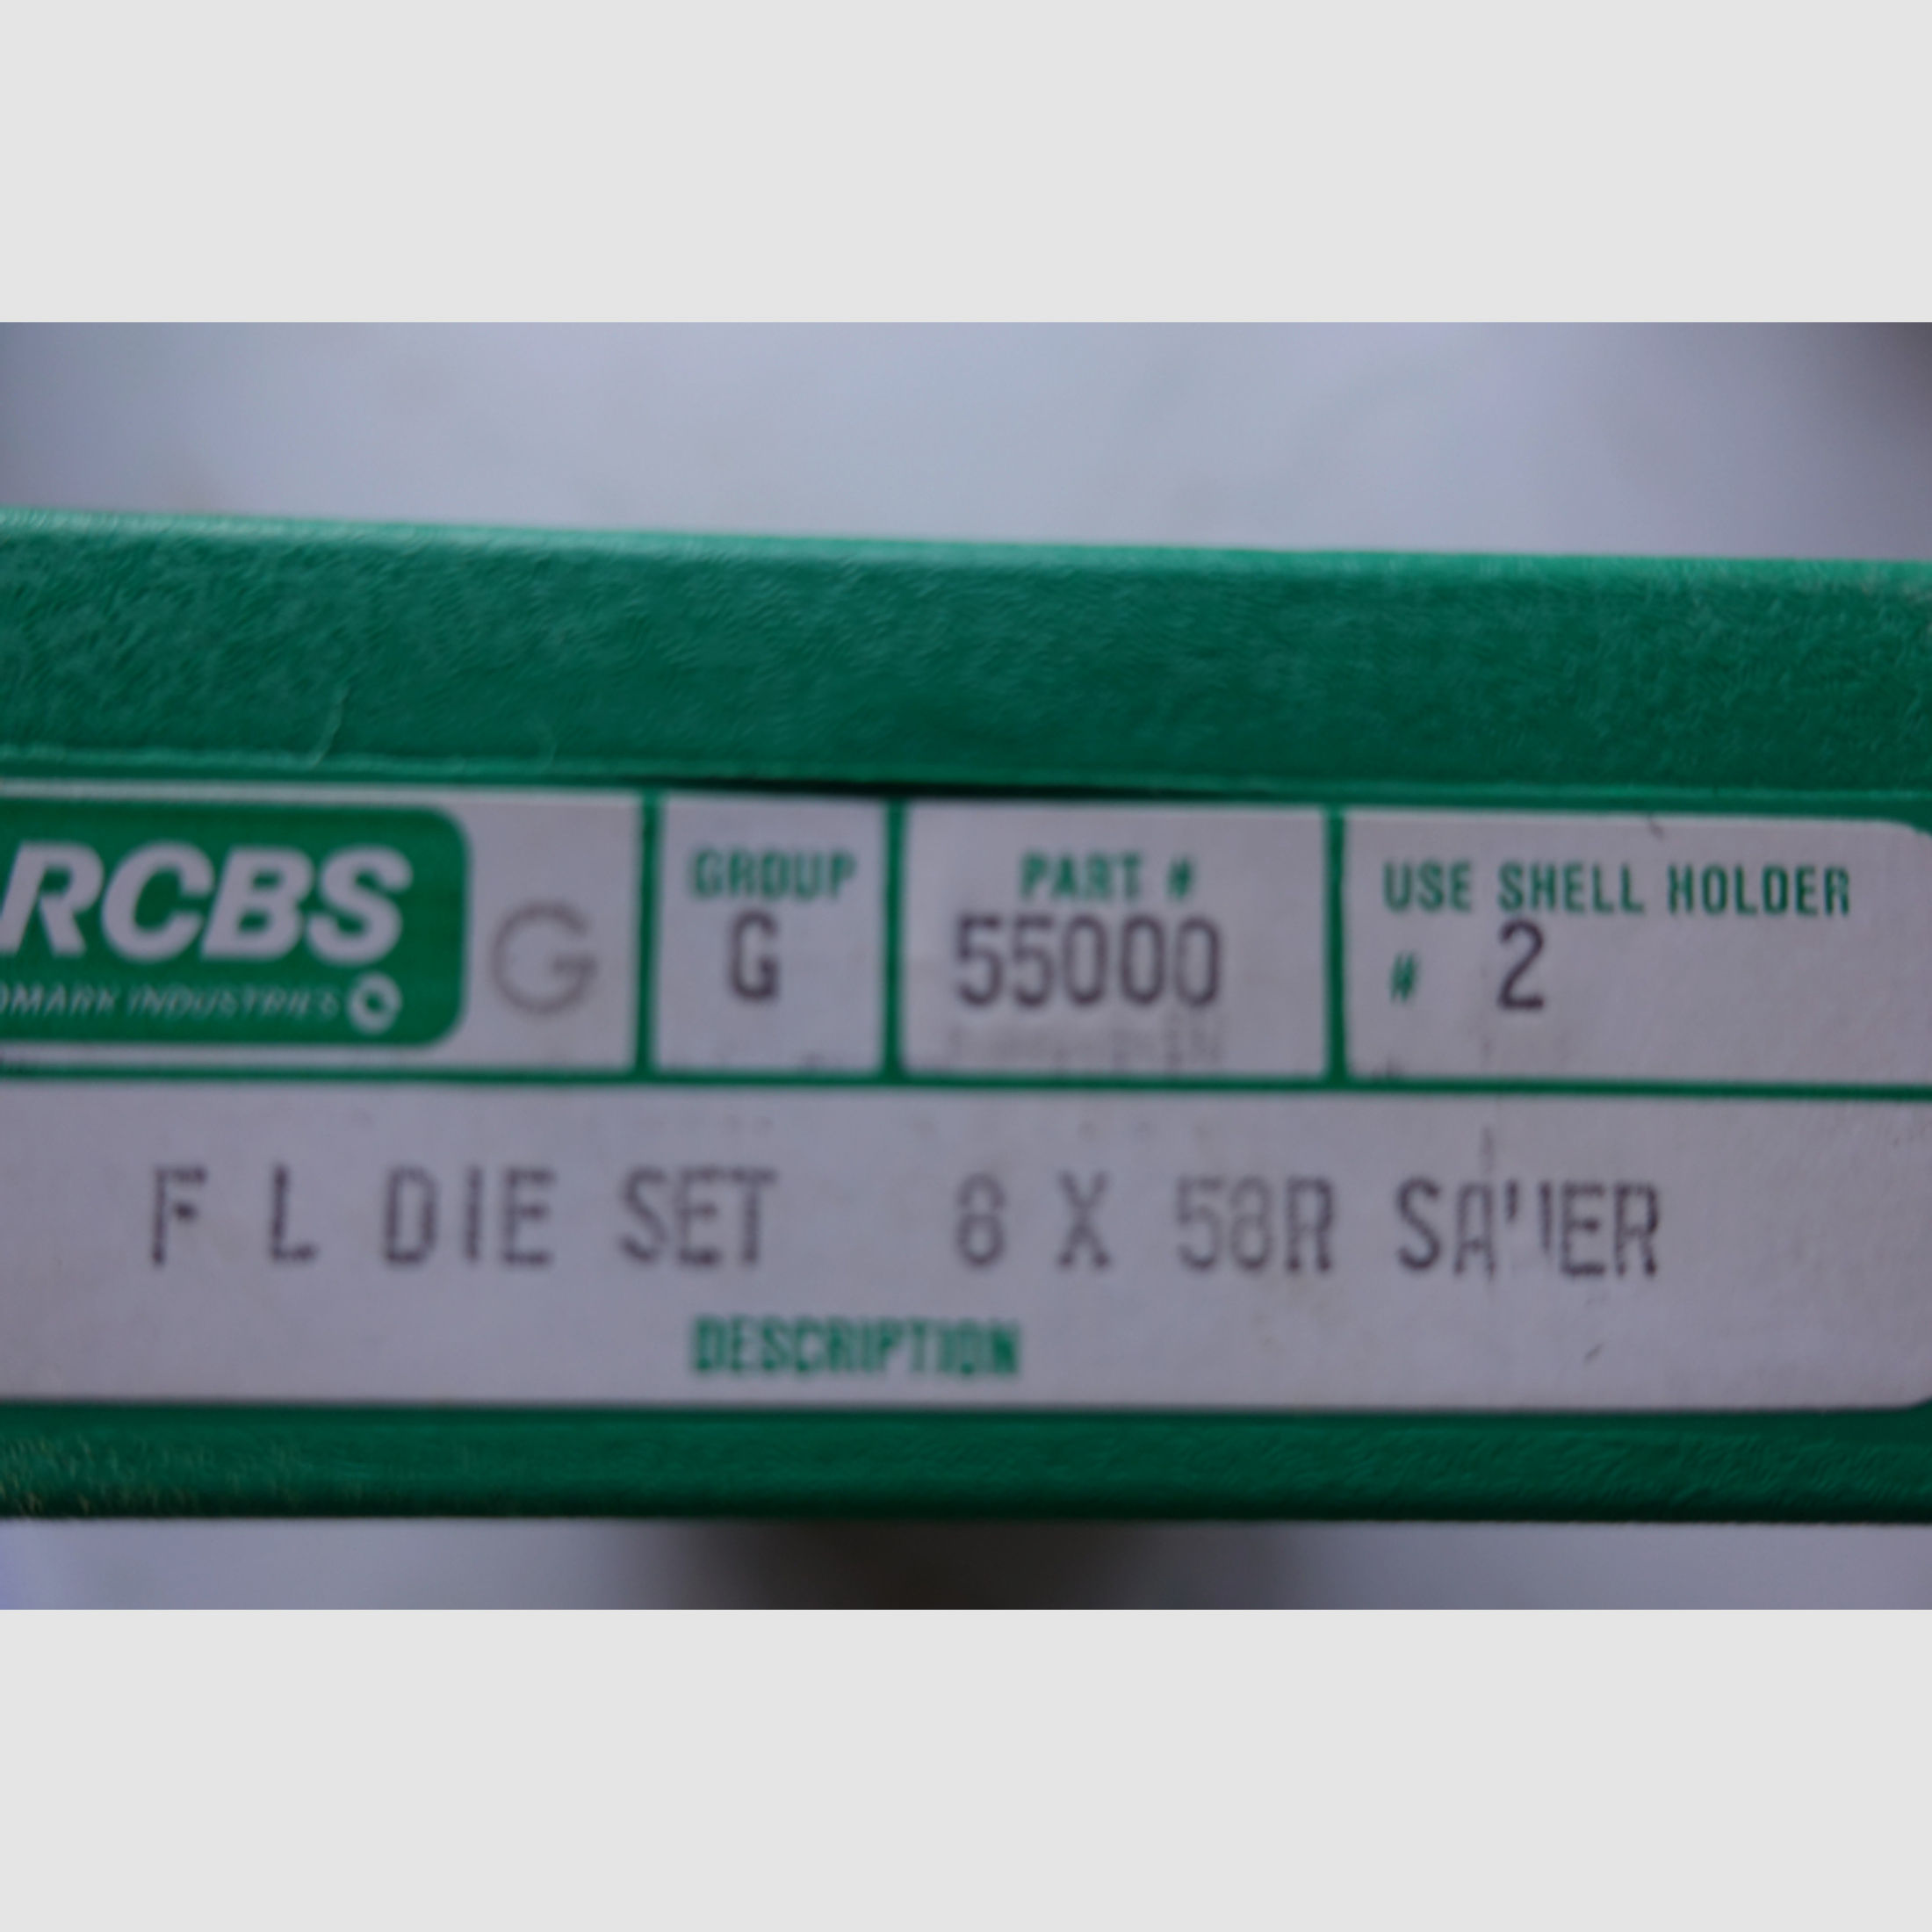 RCBS F L Die Set Matrize 8x58R Sauer